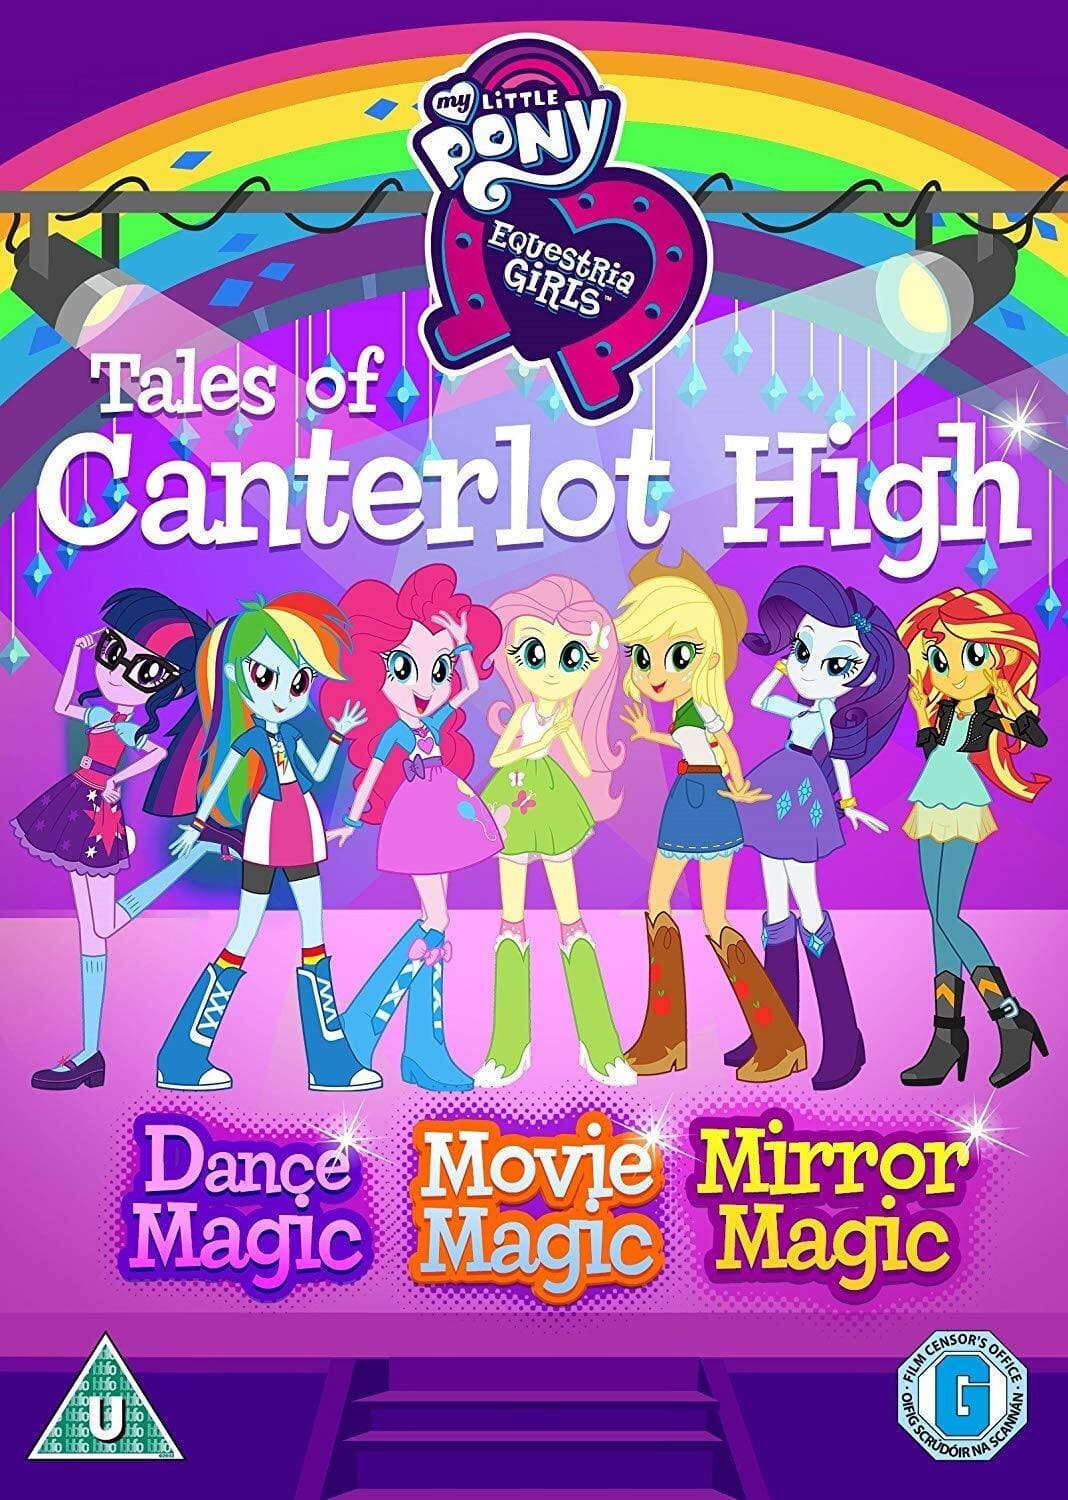 Les saisons de Equestria Girls : les contes de Canterlot High sont-elles disponibles sur Netflix ou autre ?